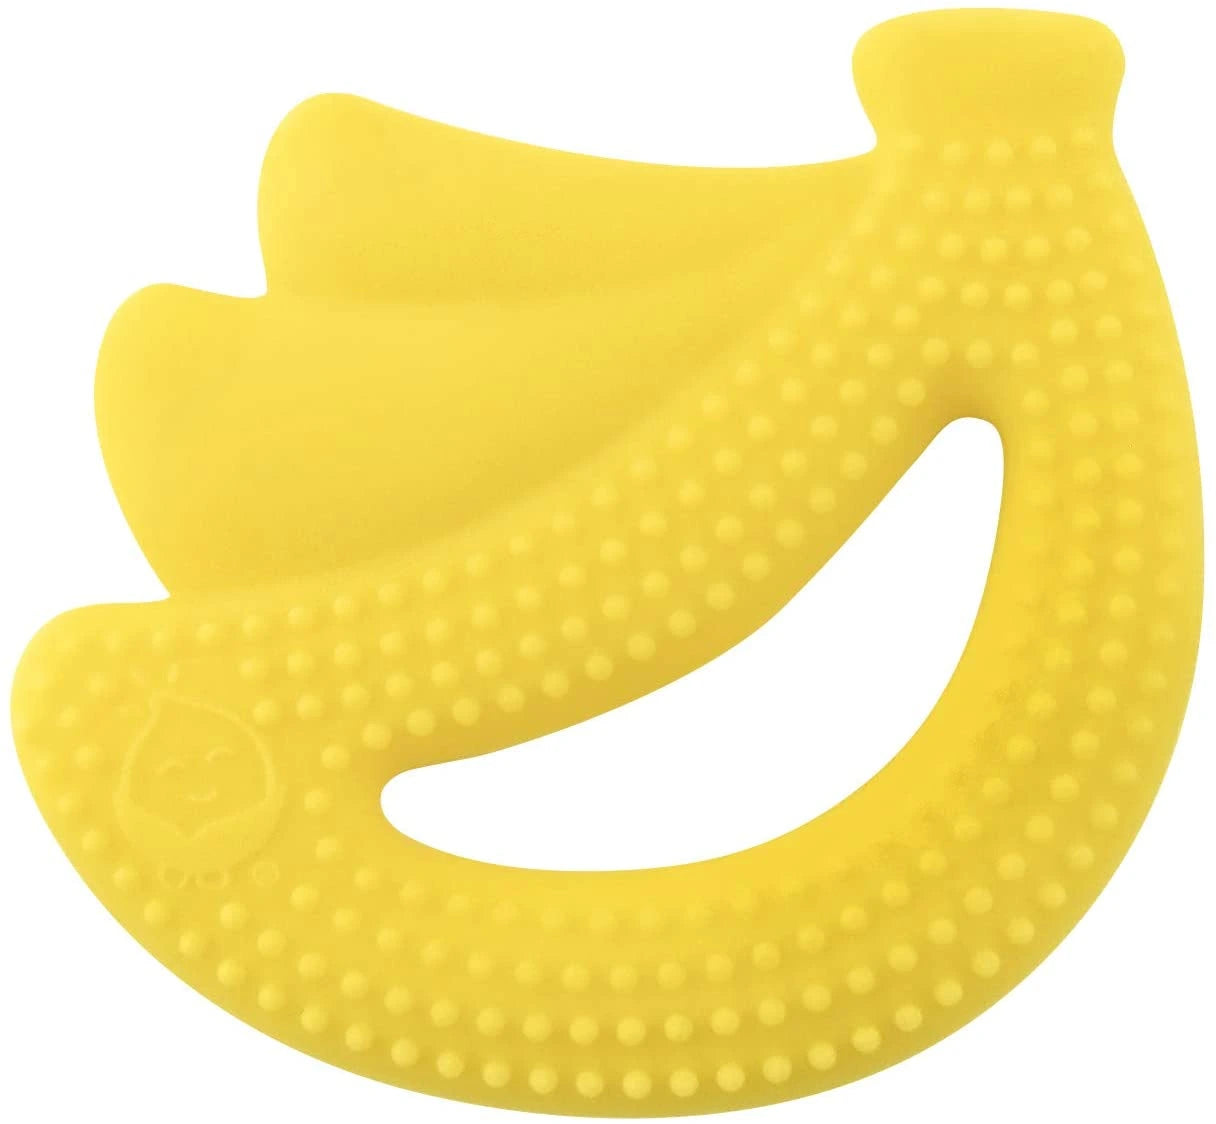 Silicone Fruit Teether-Banana